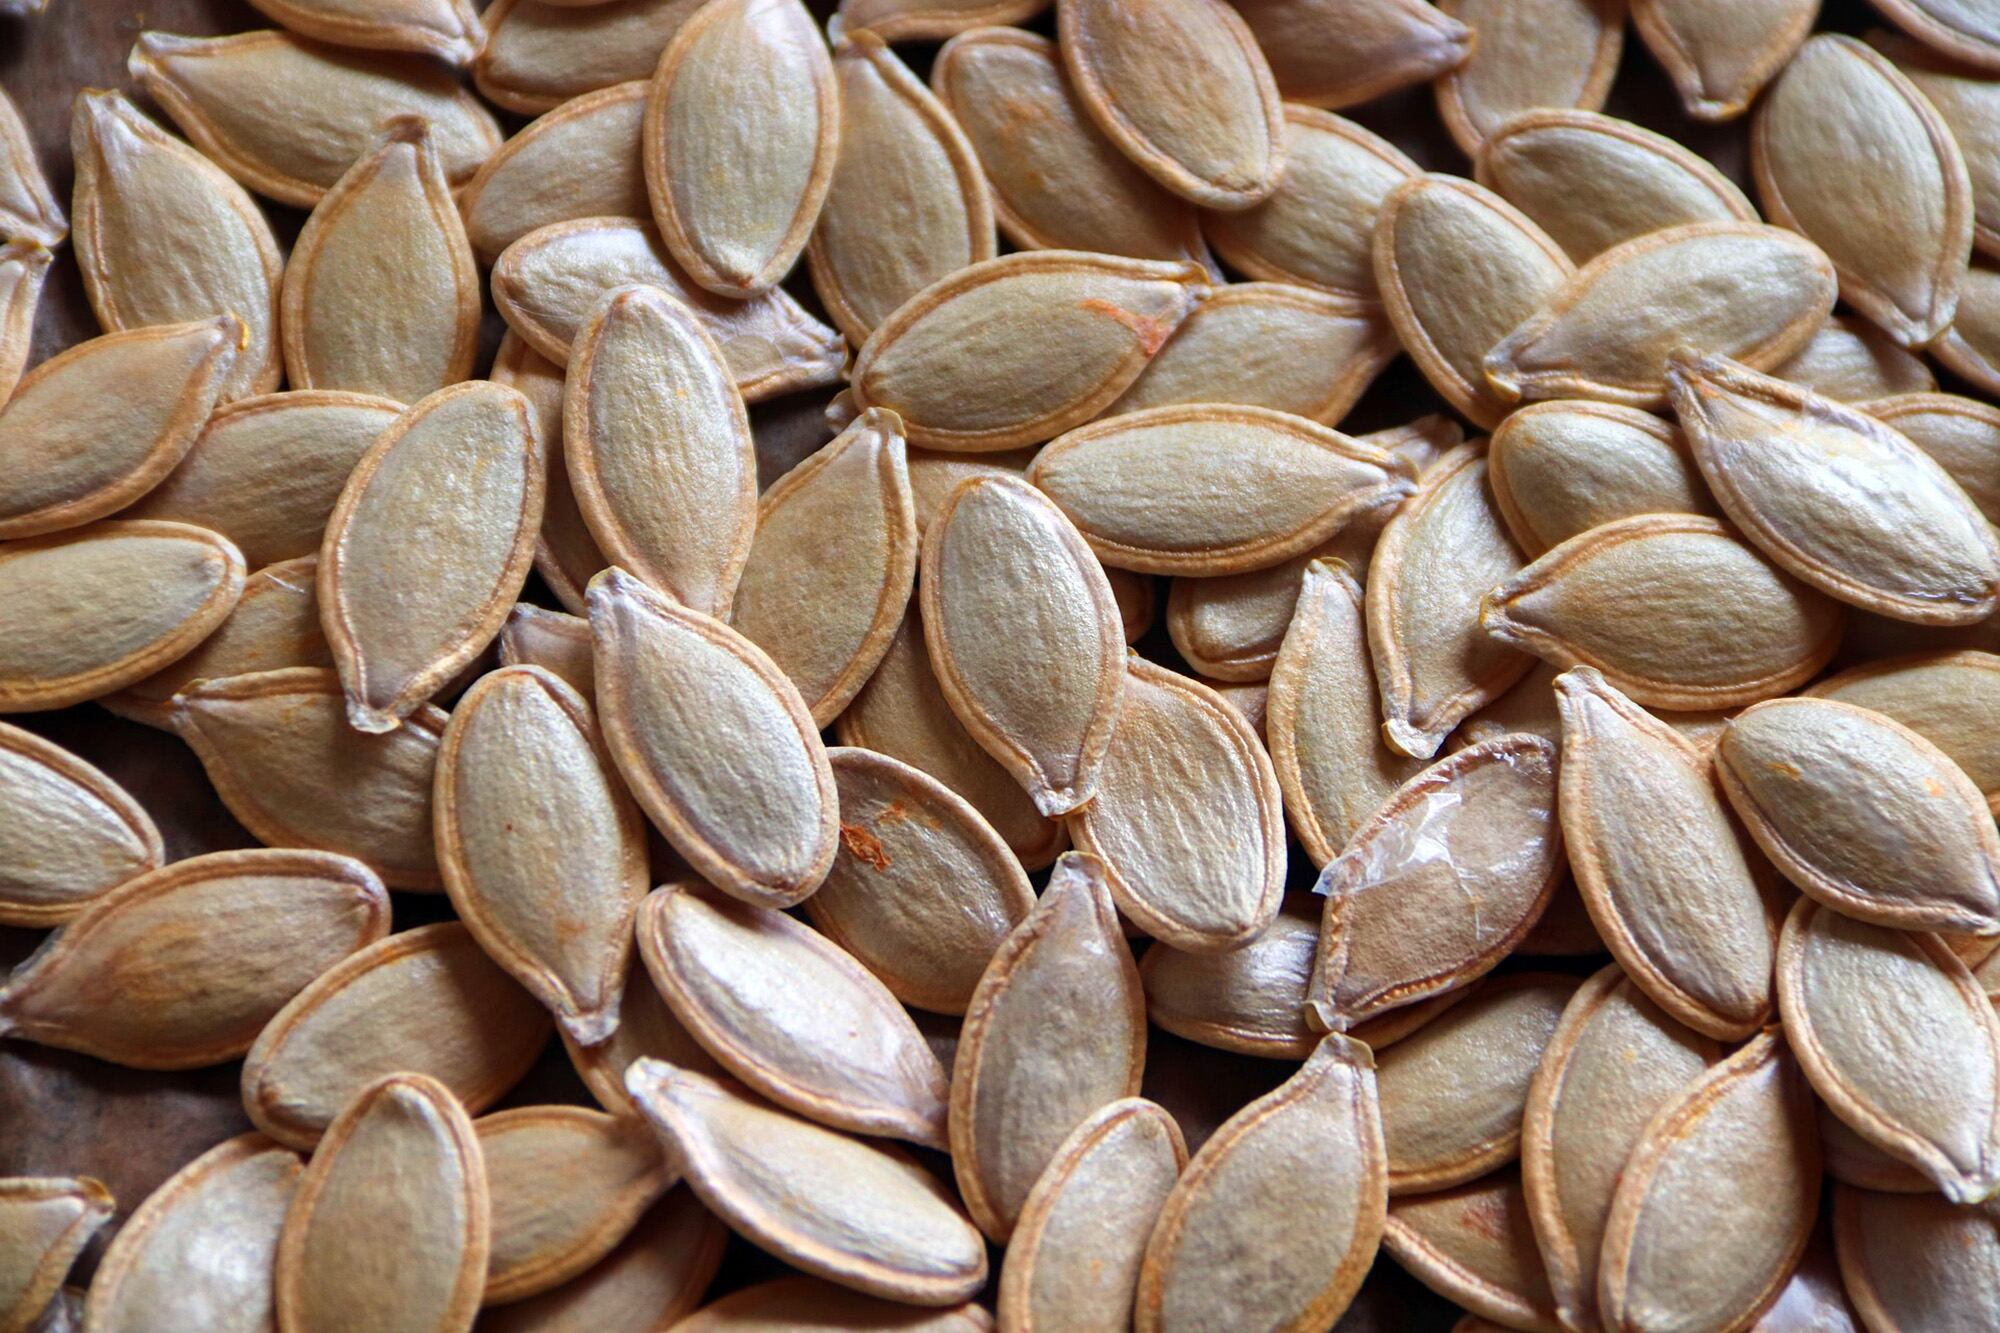 El tipo de semilla que elimina lombrices y parásitos de manera eficaz en los intestinos